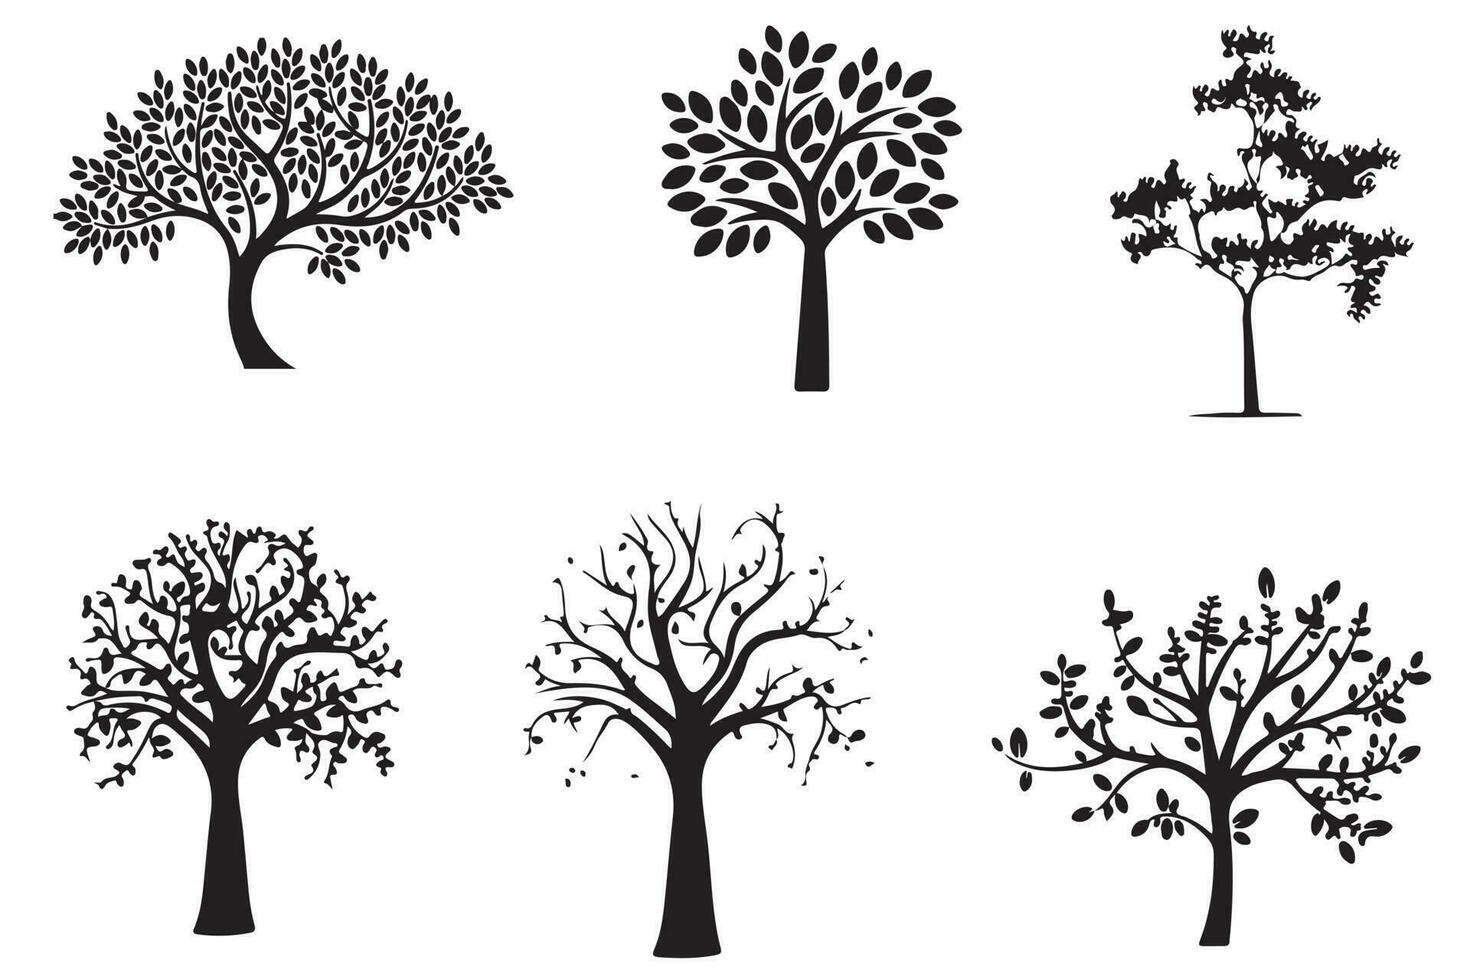 död- och torr träd silhuetter samling uppsättning illustration vektor konst design